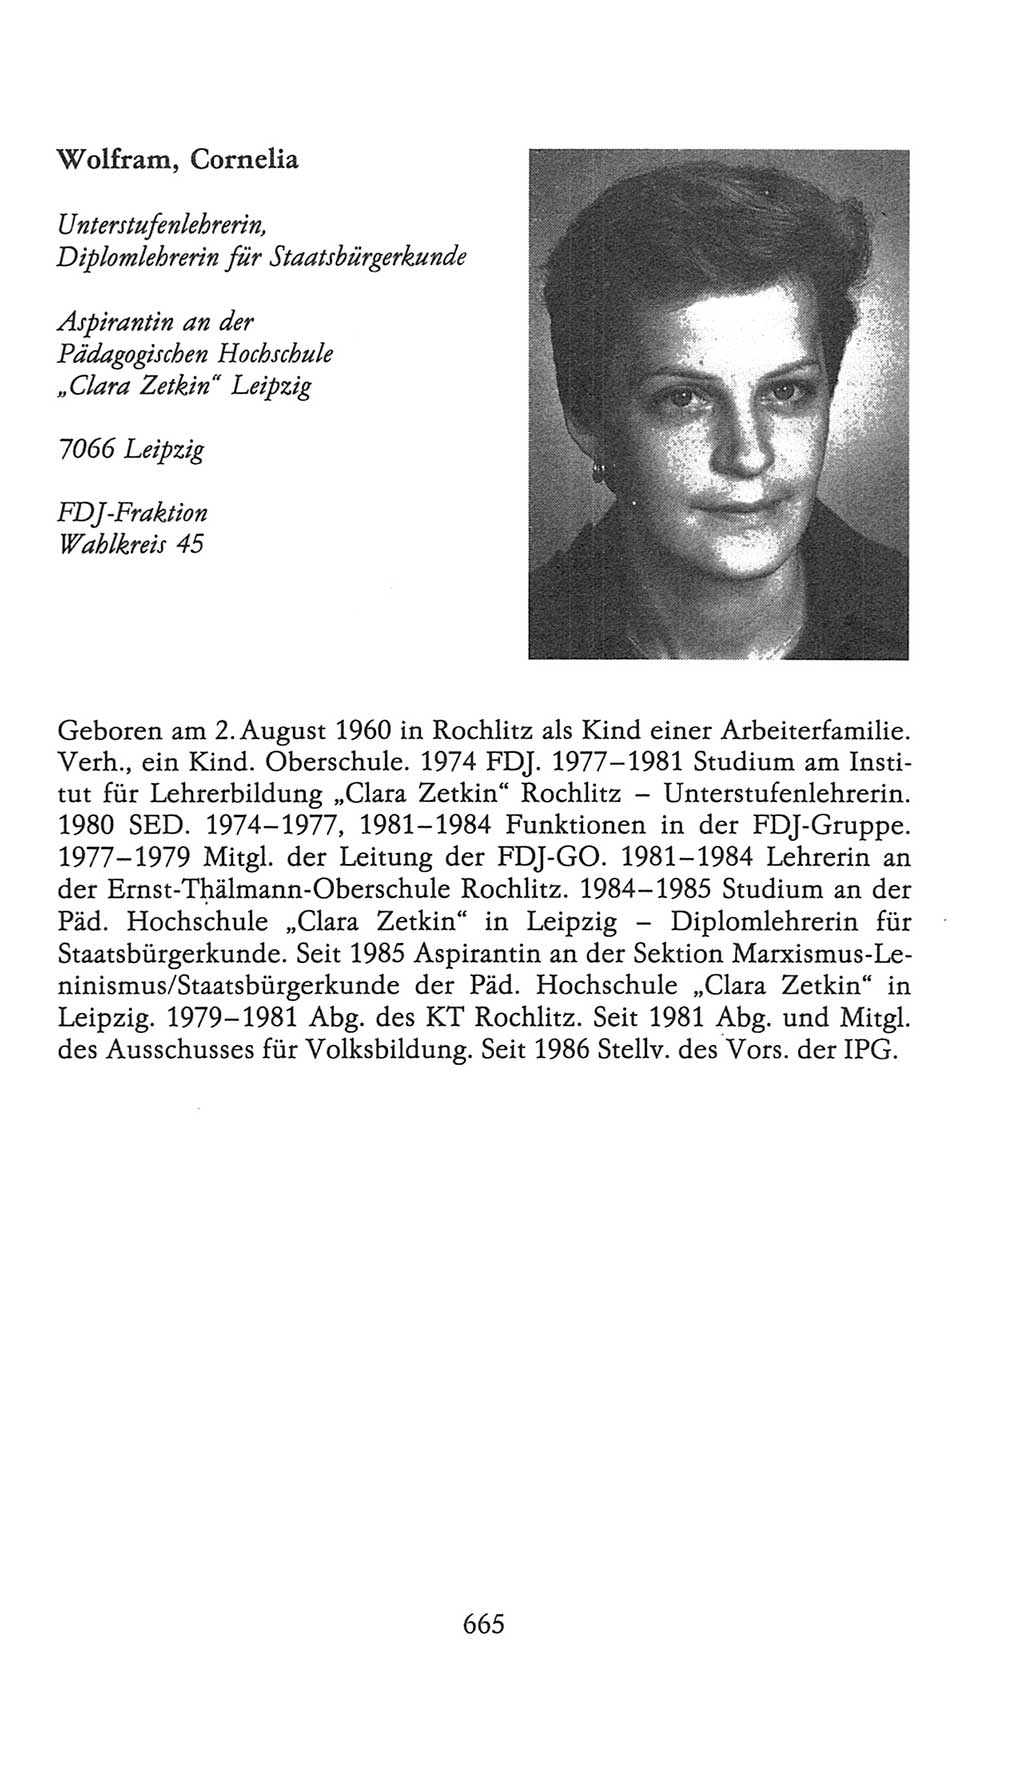 Volkskammer (VK) der Deutschen Demokratischen Republik (DDR), 9. Wahlperiode 1986-1990, Seite 665 (VK. DDR 9. WP. 1986-1990, S. 665)